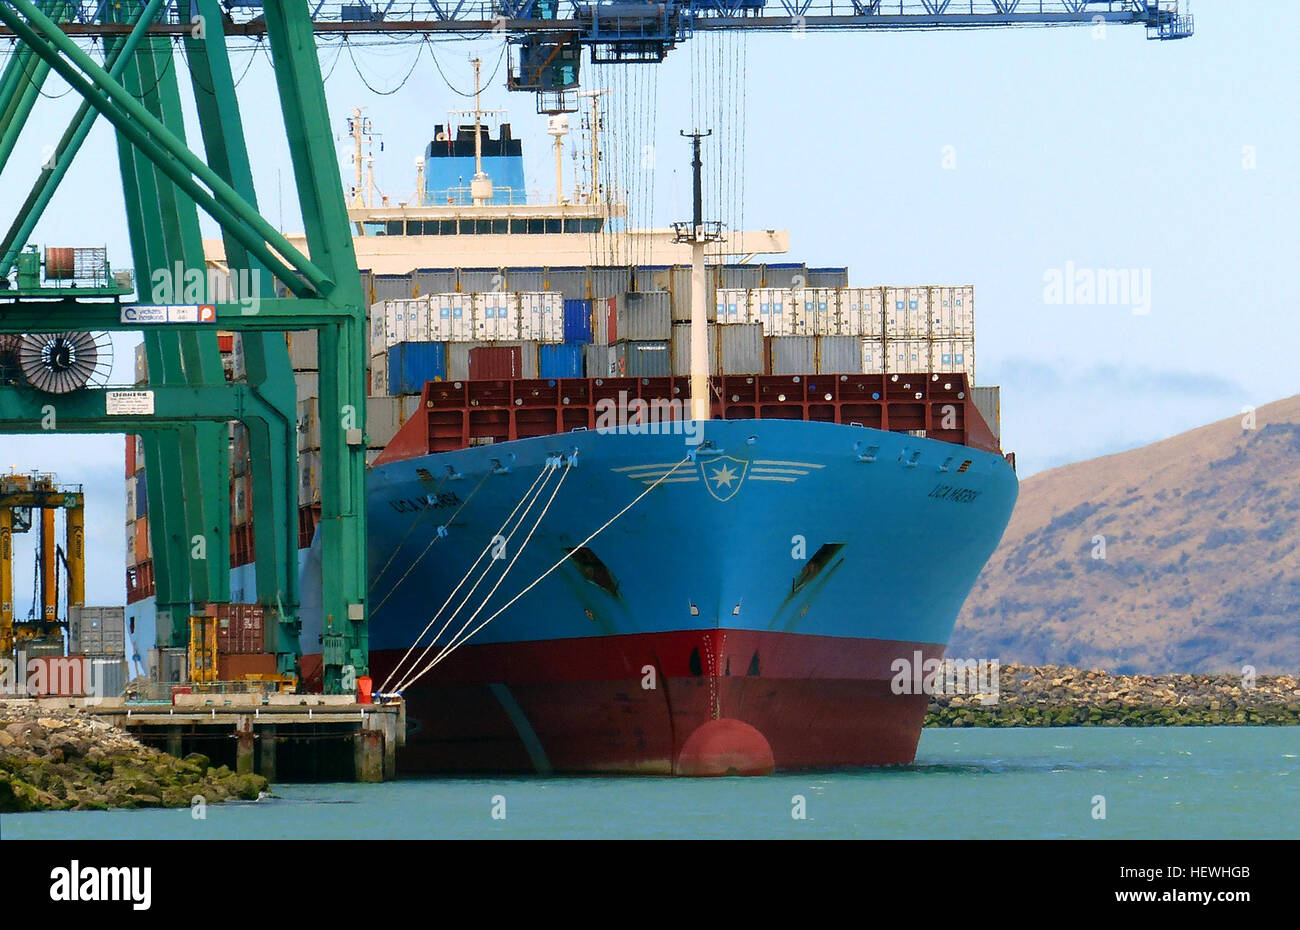 Maersk Line ist der weltweiten Container-Division und die größte Organisationseinheit der A.P. Moller-Maersk Gruppe, eine dänische Großkonzern. Es gilt als die größte Container-Reederei der Welt nach Umsatz und beschäftigt rund 25.000 Mitarbeiter. [1] [2] Maersk Line betreibt über 600 Schiffe und hat eine Kapazität von 2,6 Millionen TEU (Twenty-Foot Equivalent Unit). [3] das Unternehmen wurde 1928 gegründet. Stockfoto